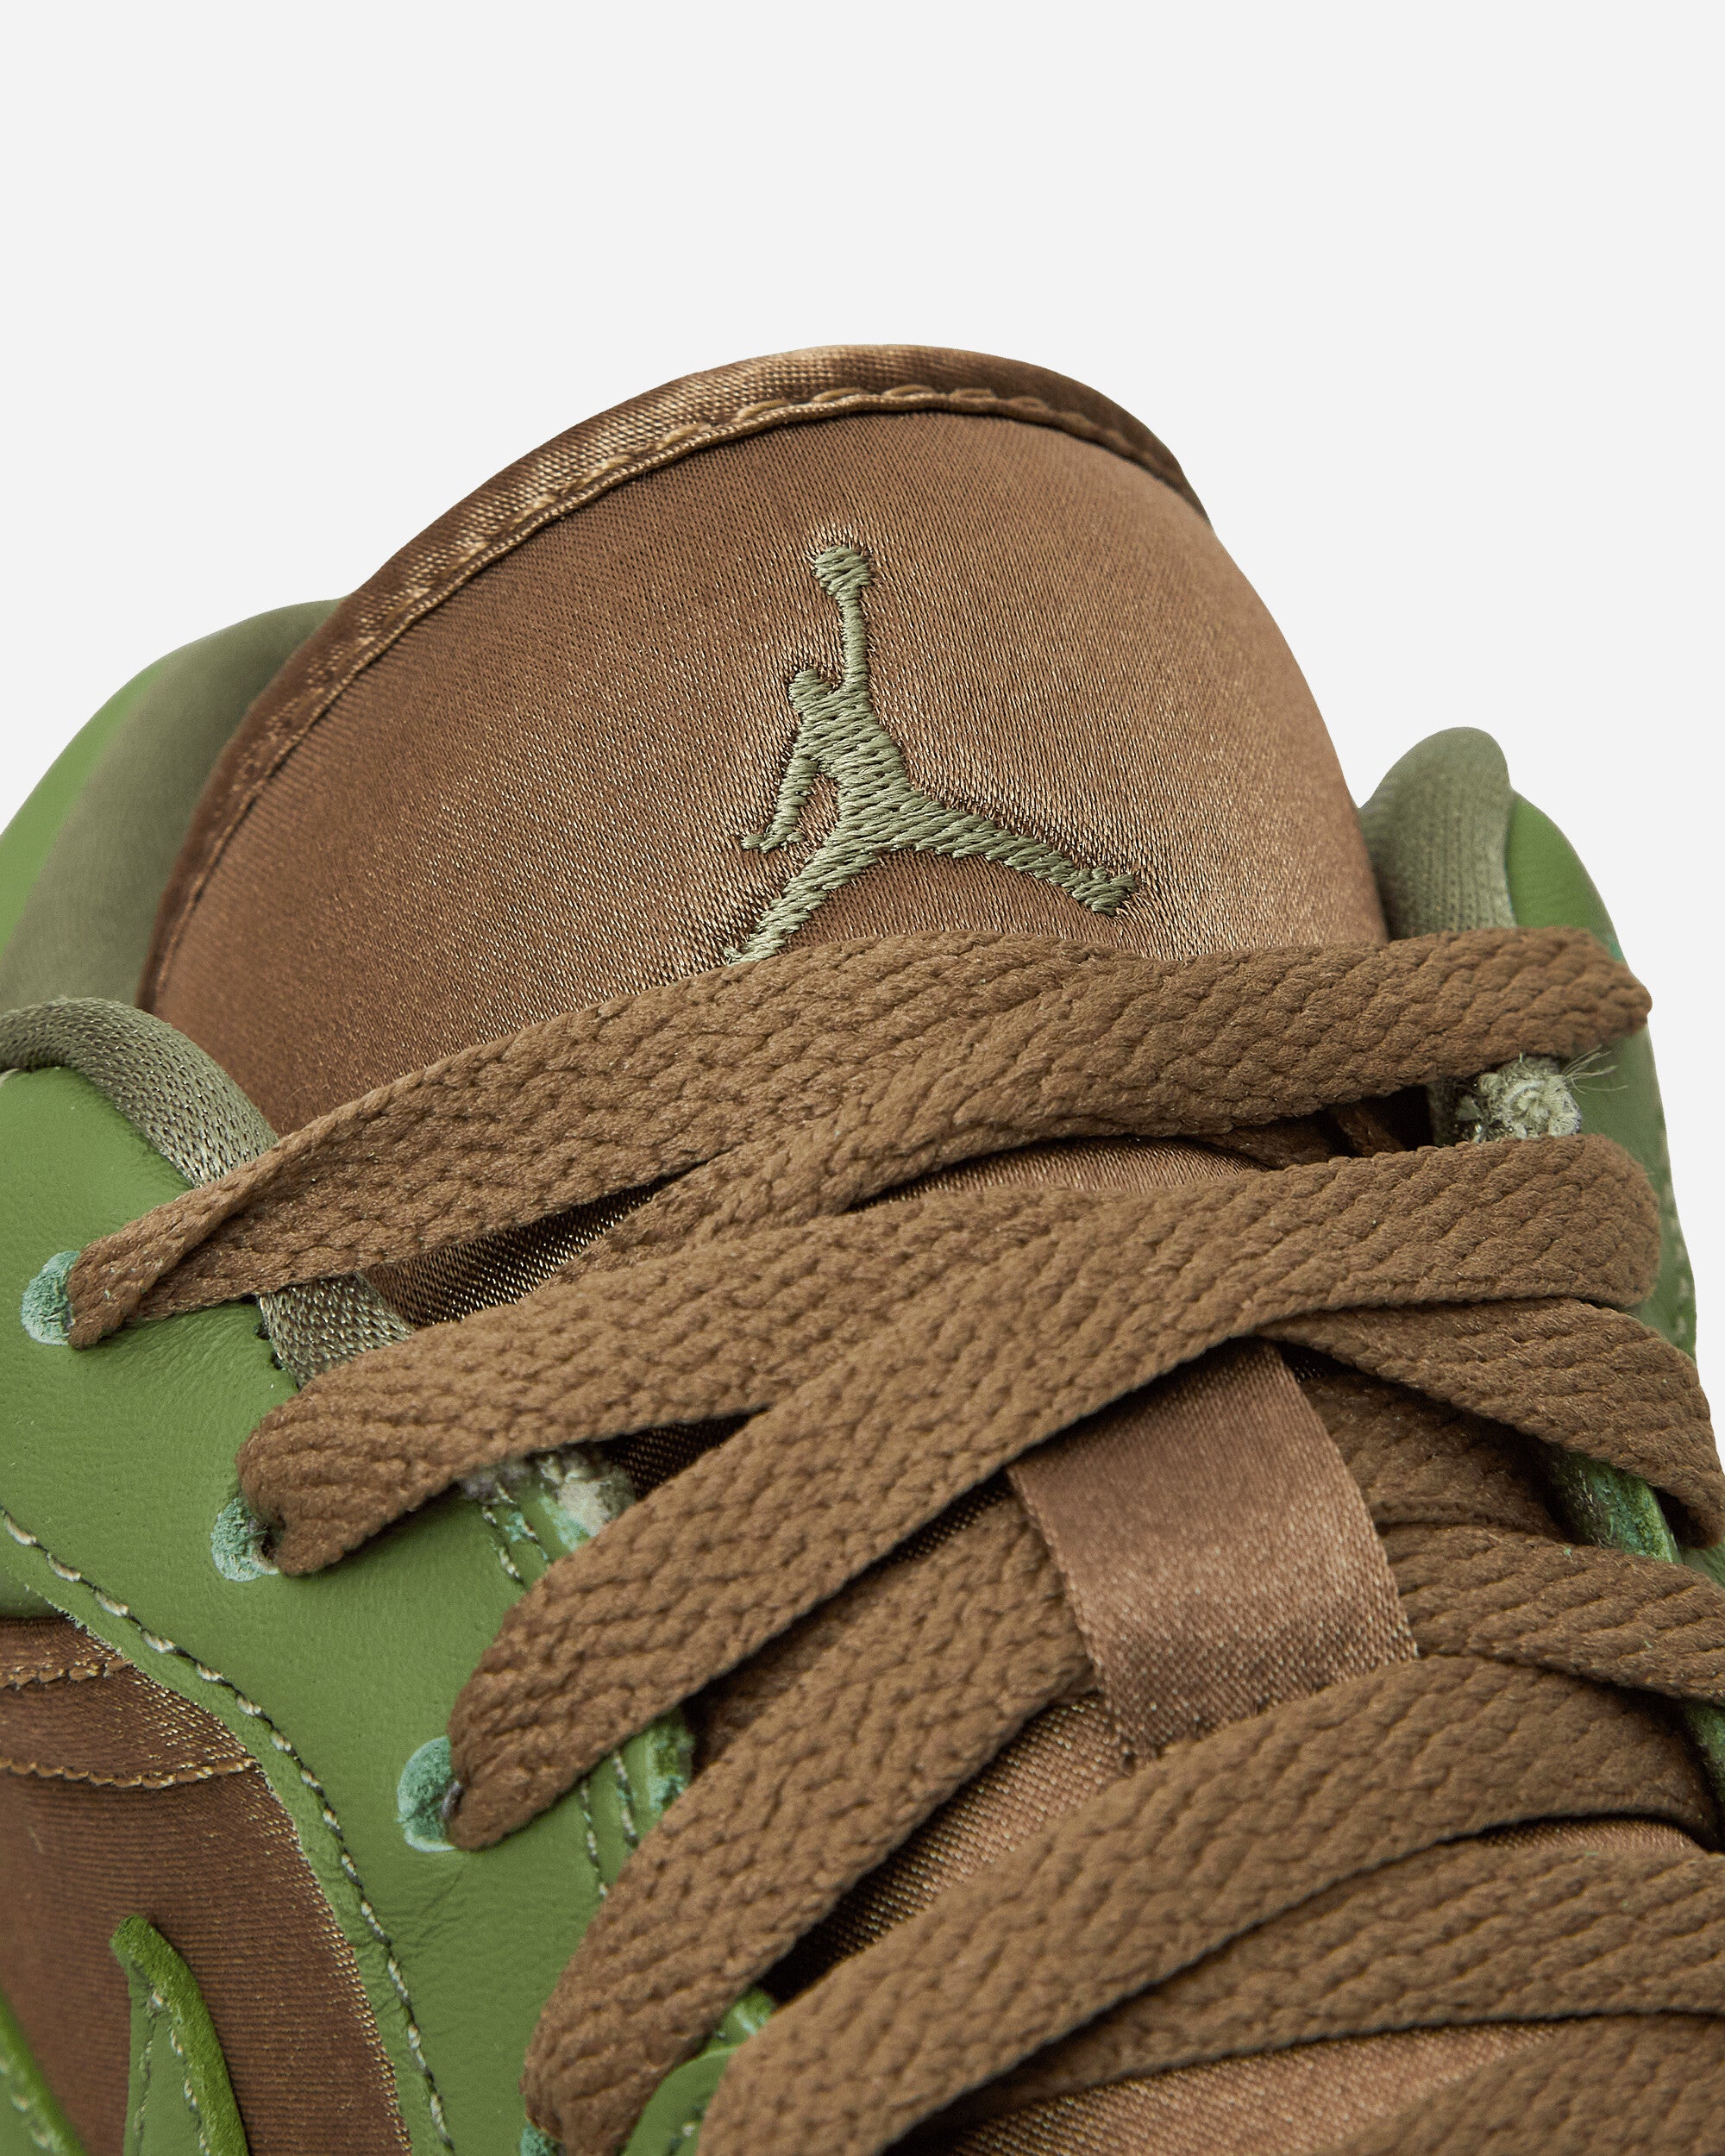 Nike Jordan Wmns Air Jordan 1 Low Se Brown Kelp/Sky J Lt Olive Sneakers Low FB9893-300